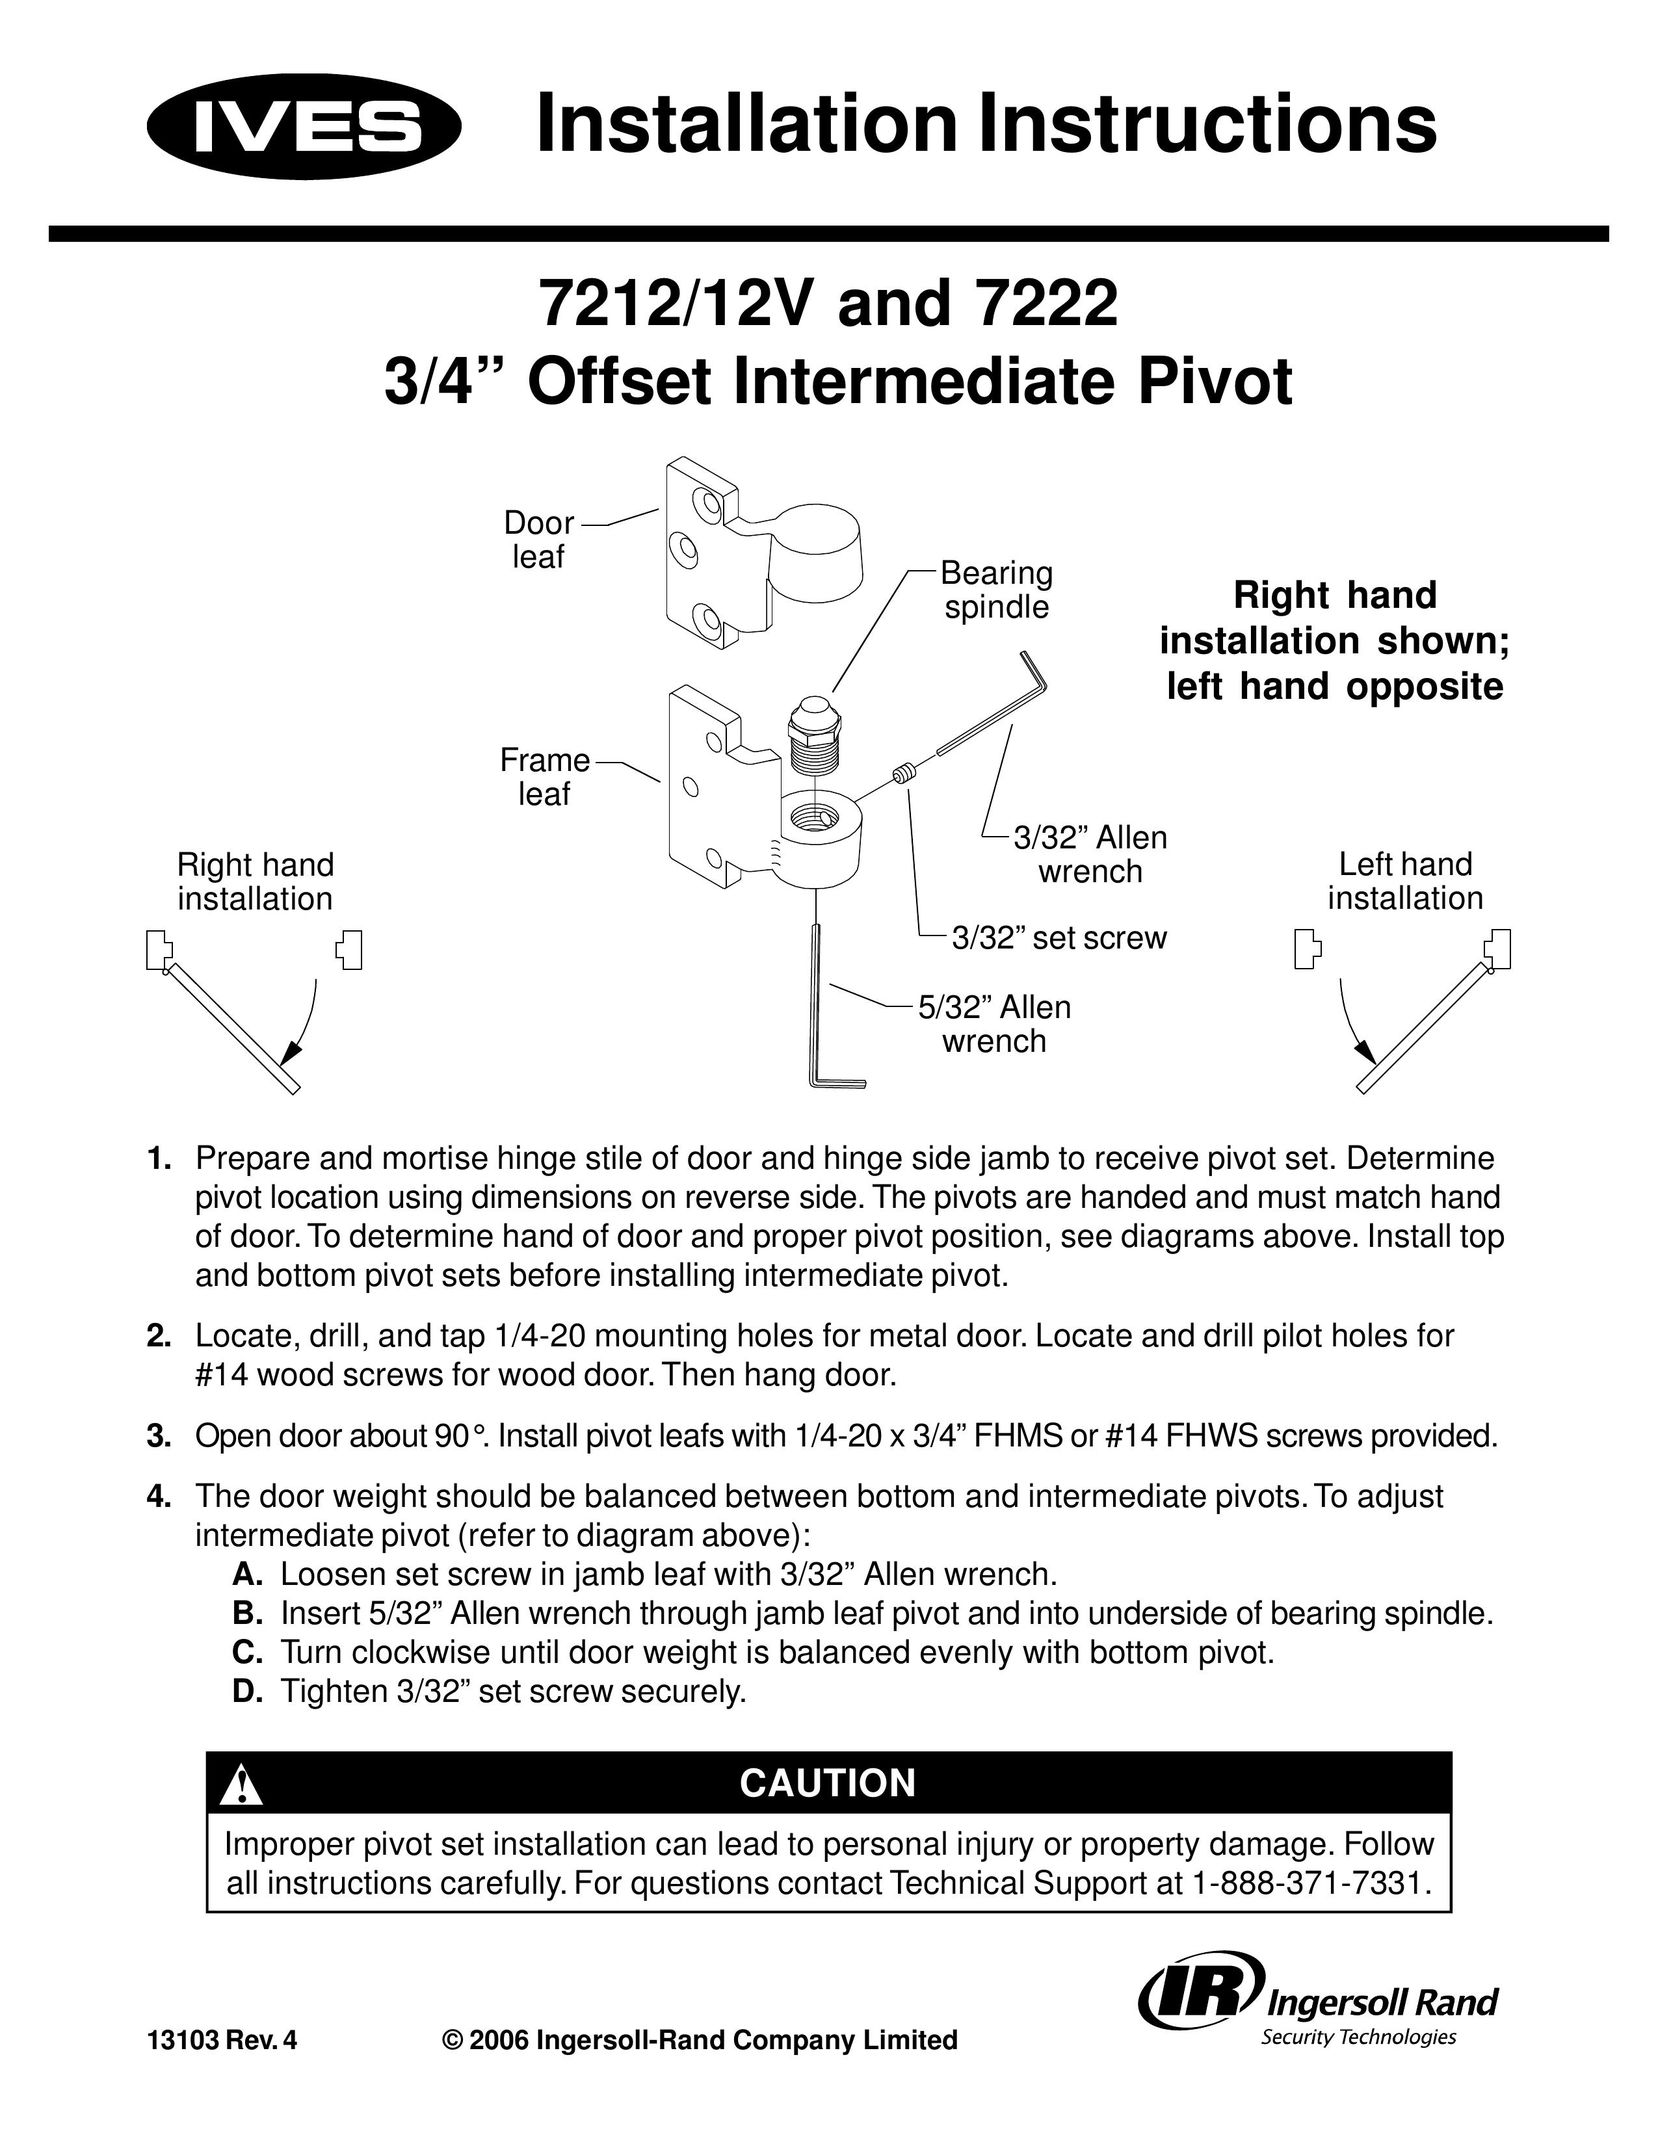 Ives 7212/12V Door User Manual